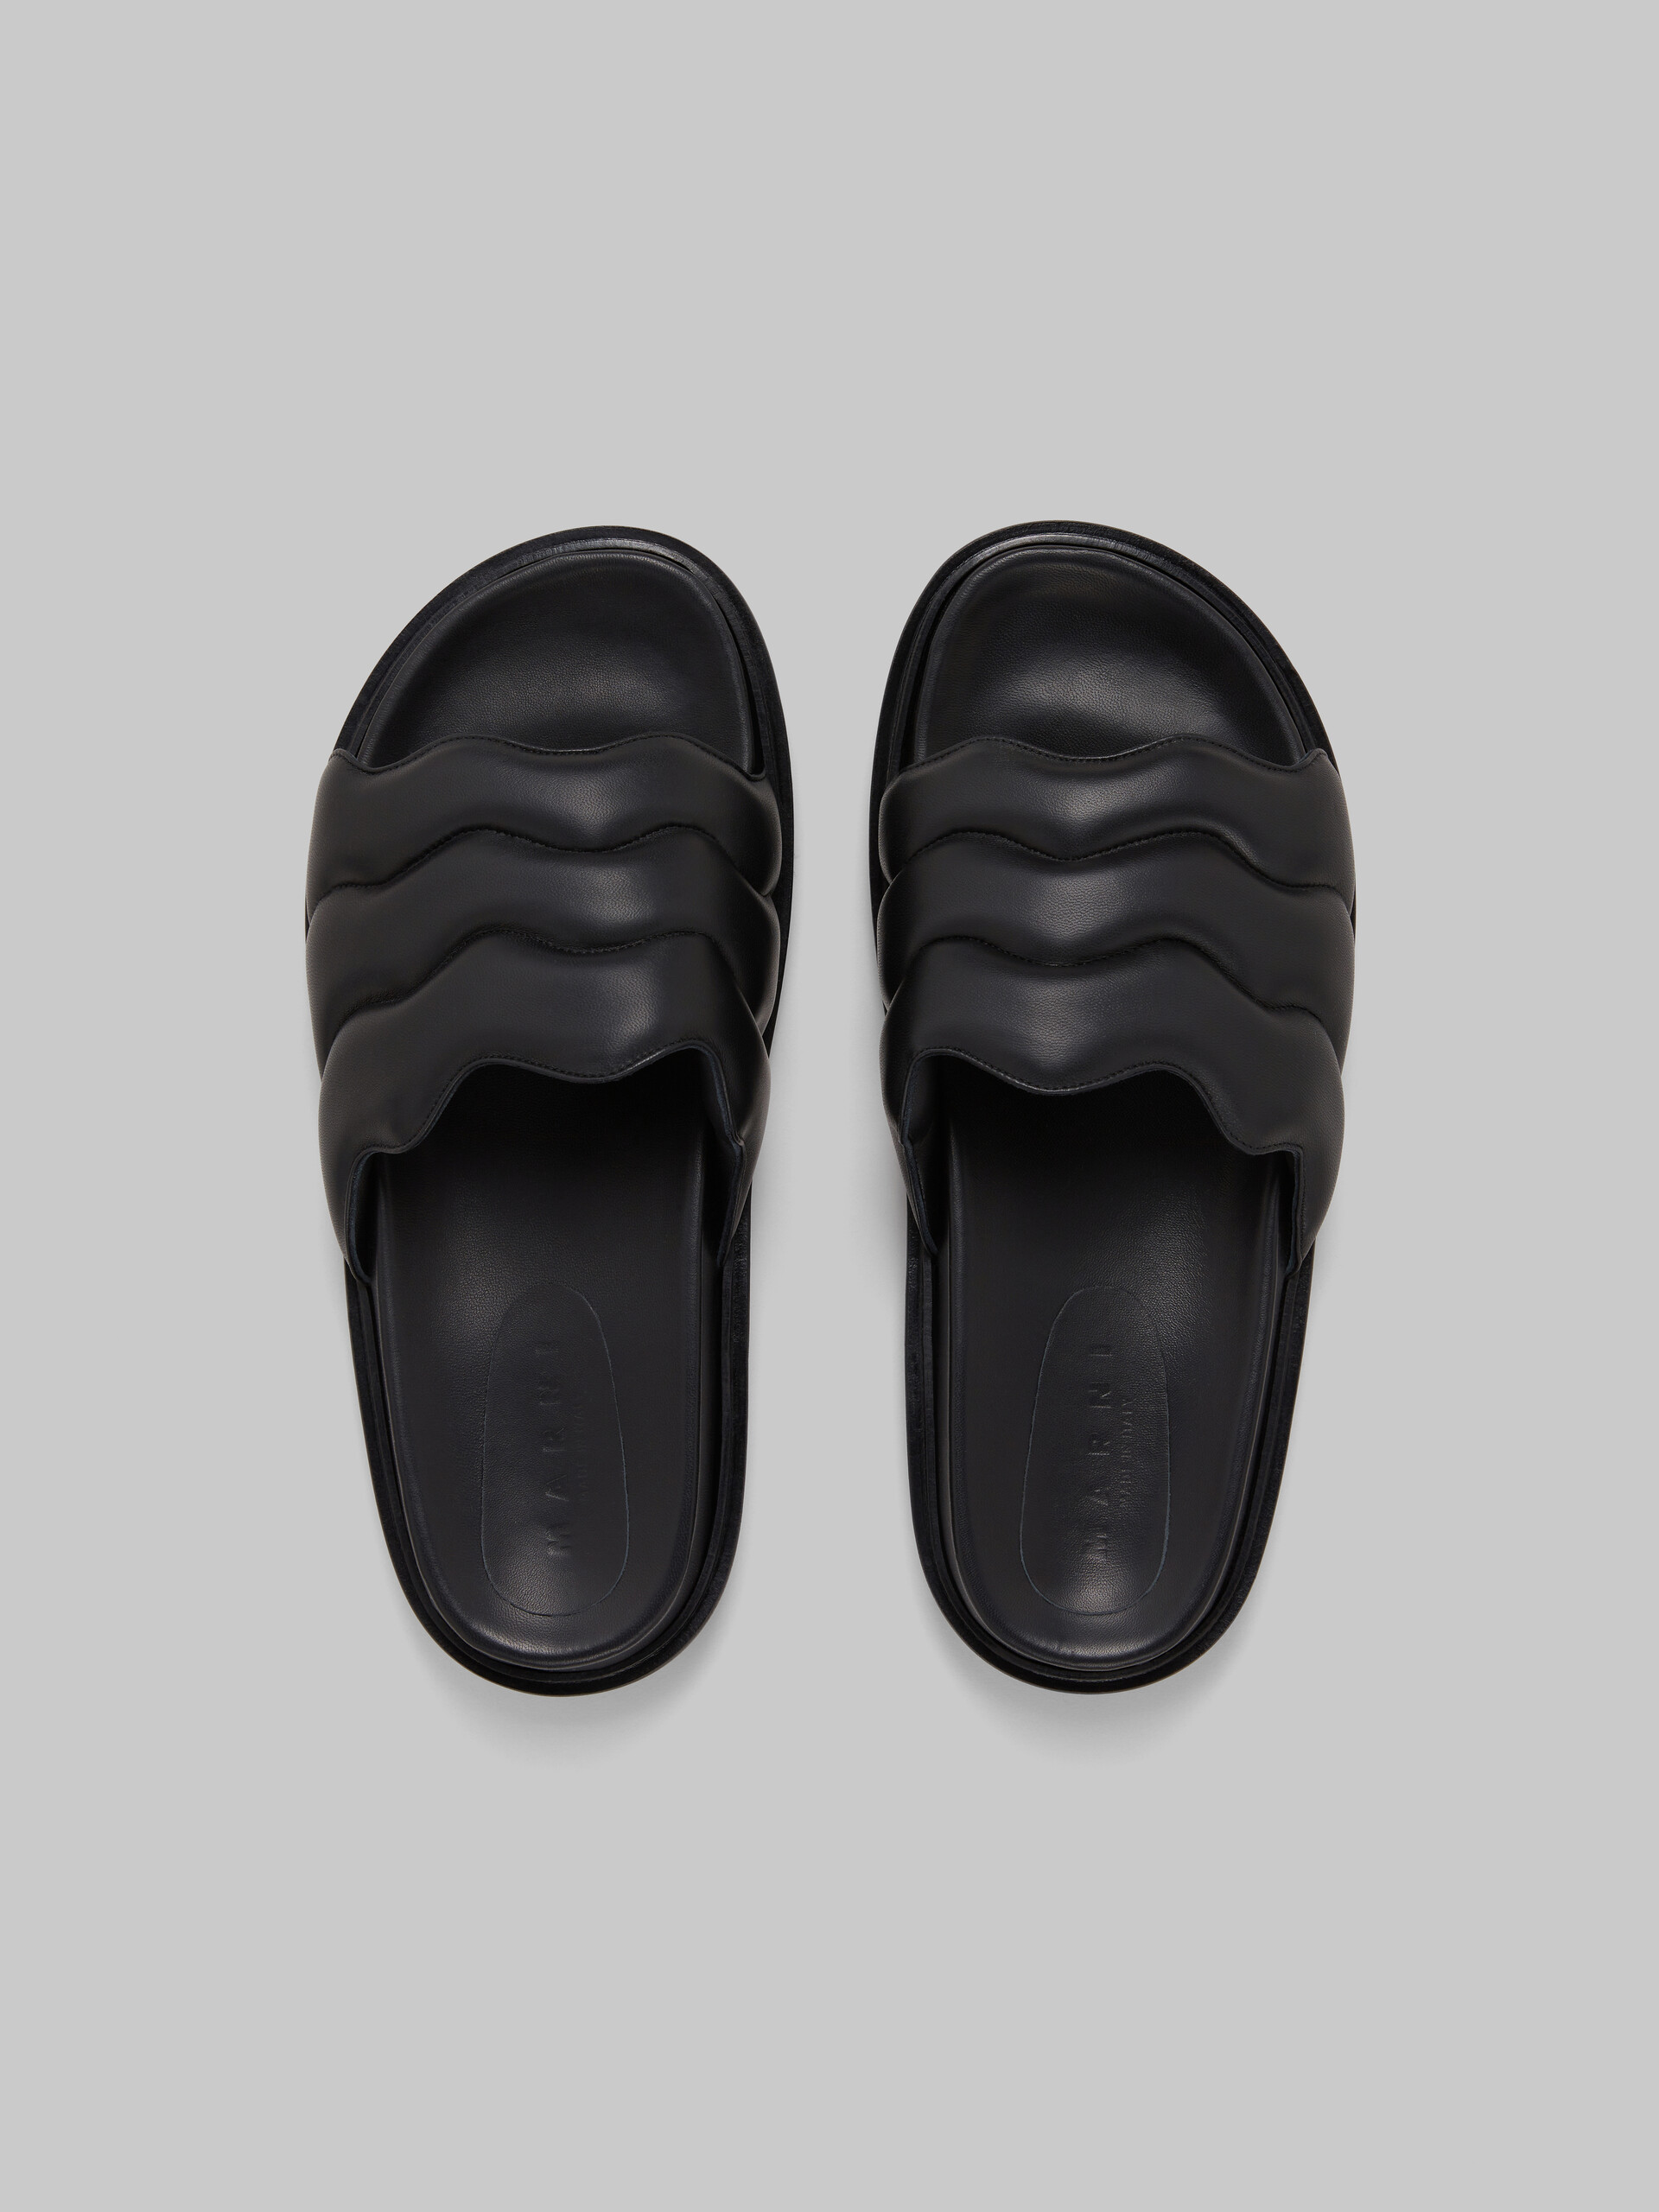 Black wavy leather slide sandal - Sandals - Image 4